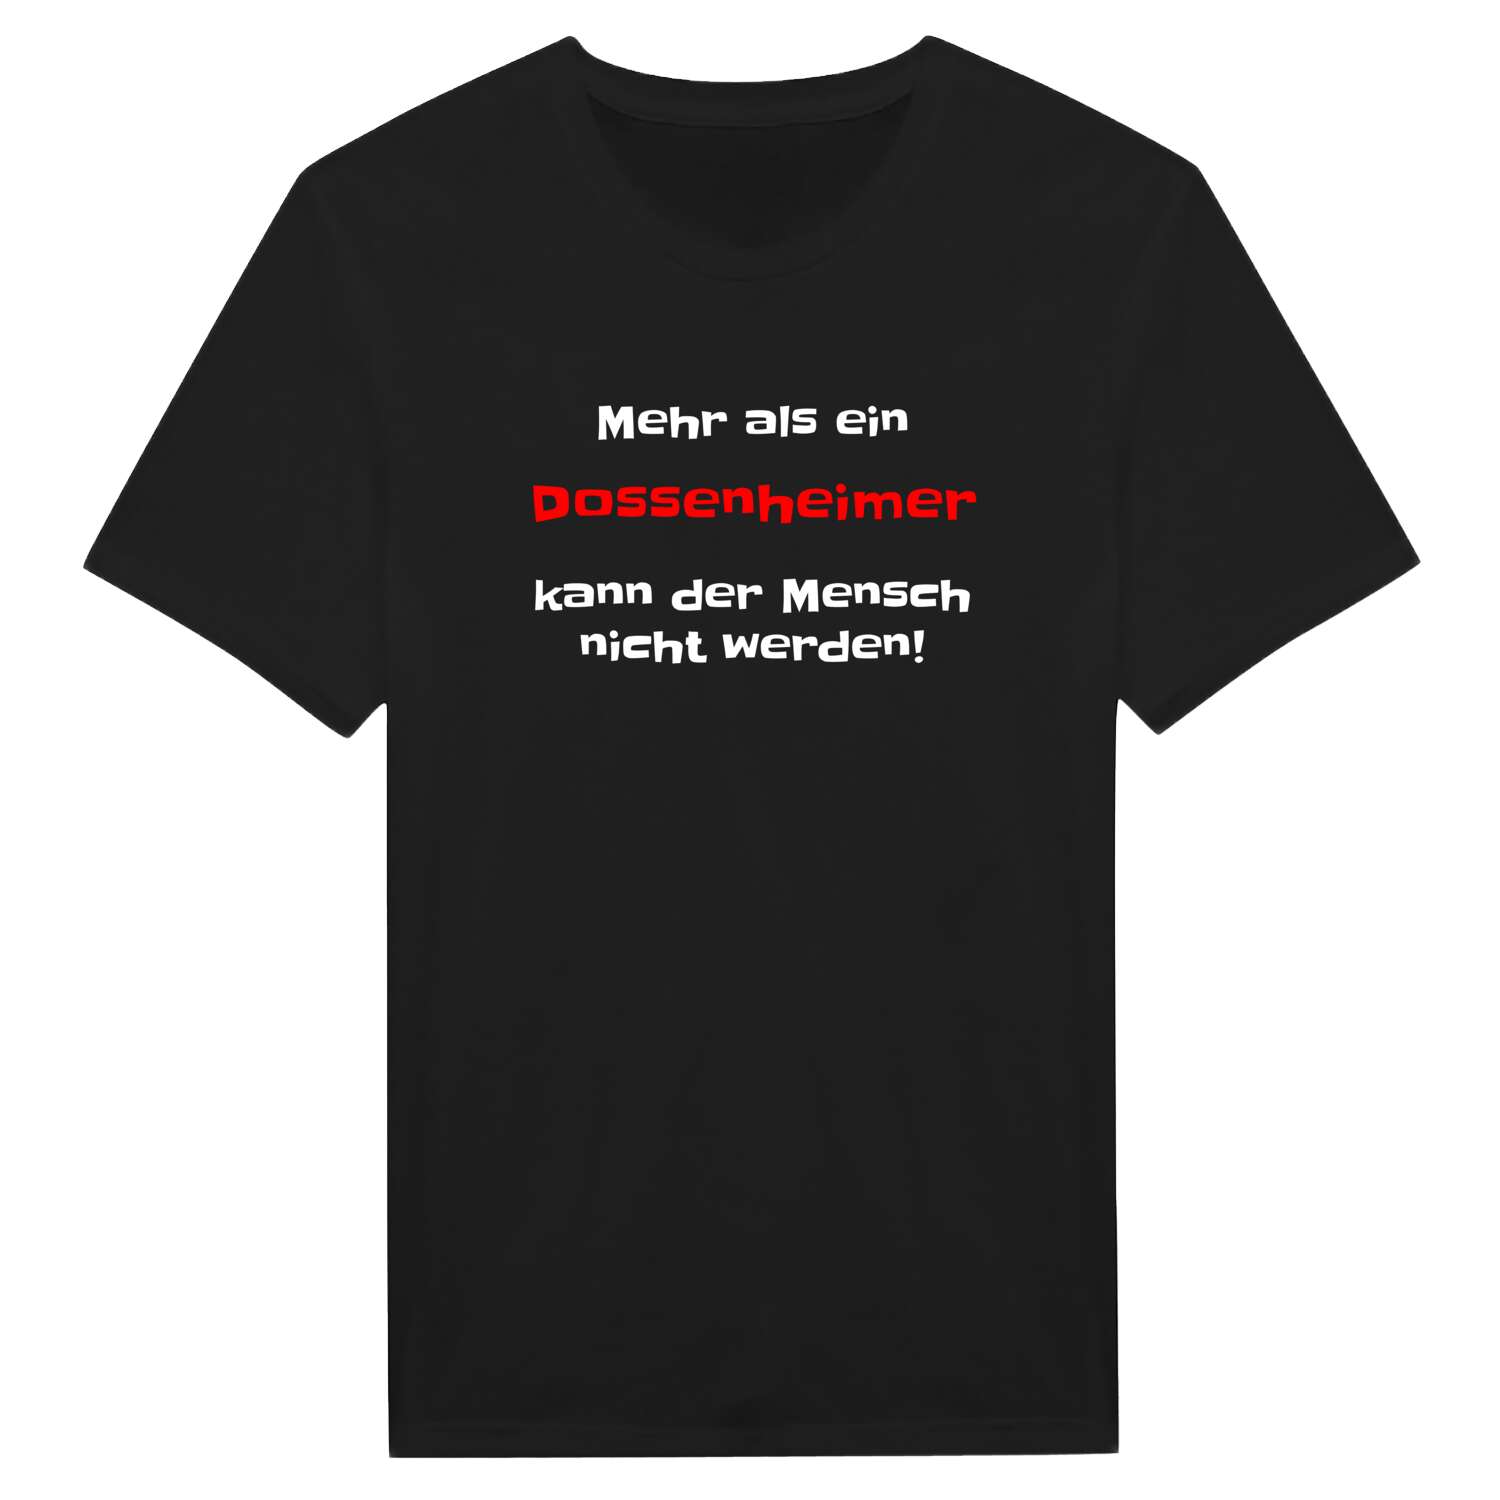 Dossenheim T-Shirt »Mehr als ein«